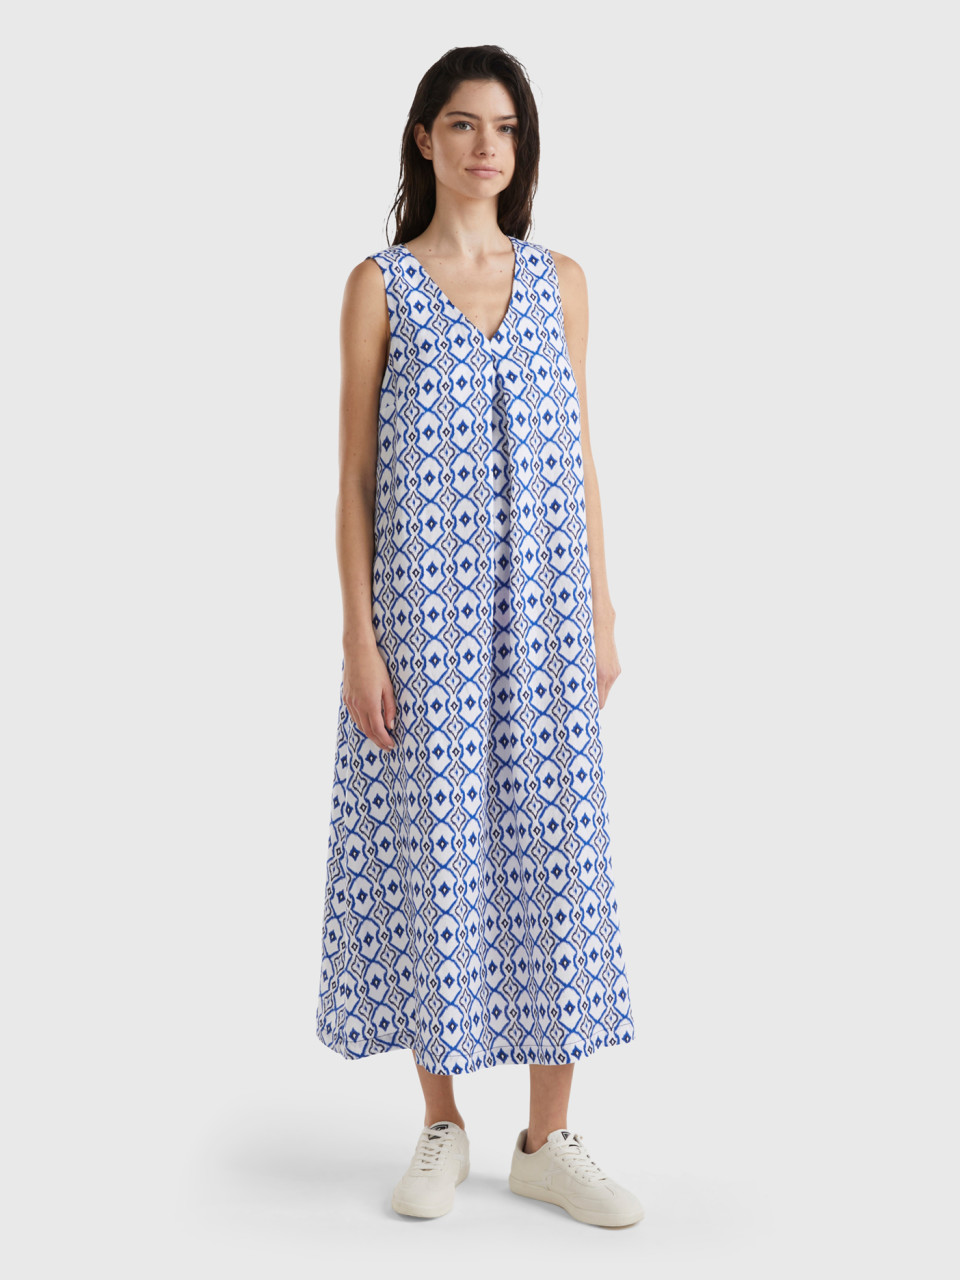 Benetton, Printed Linen Dress, Blue, Women